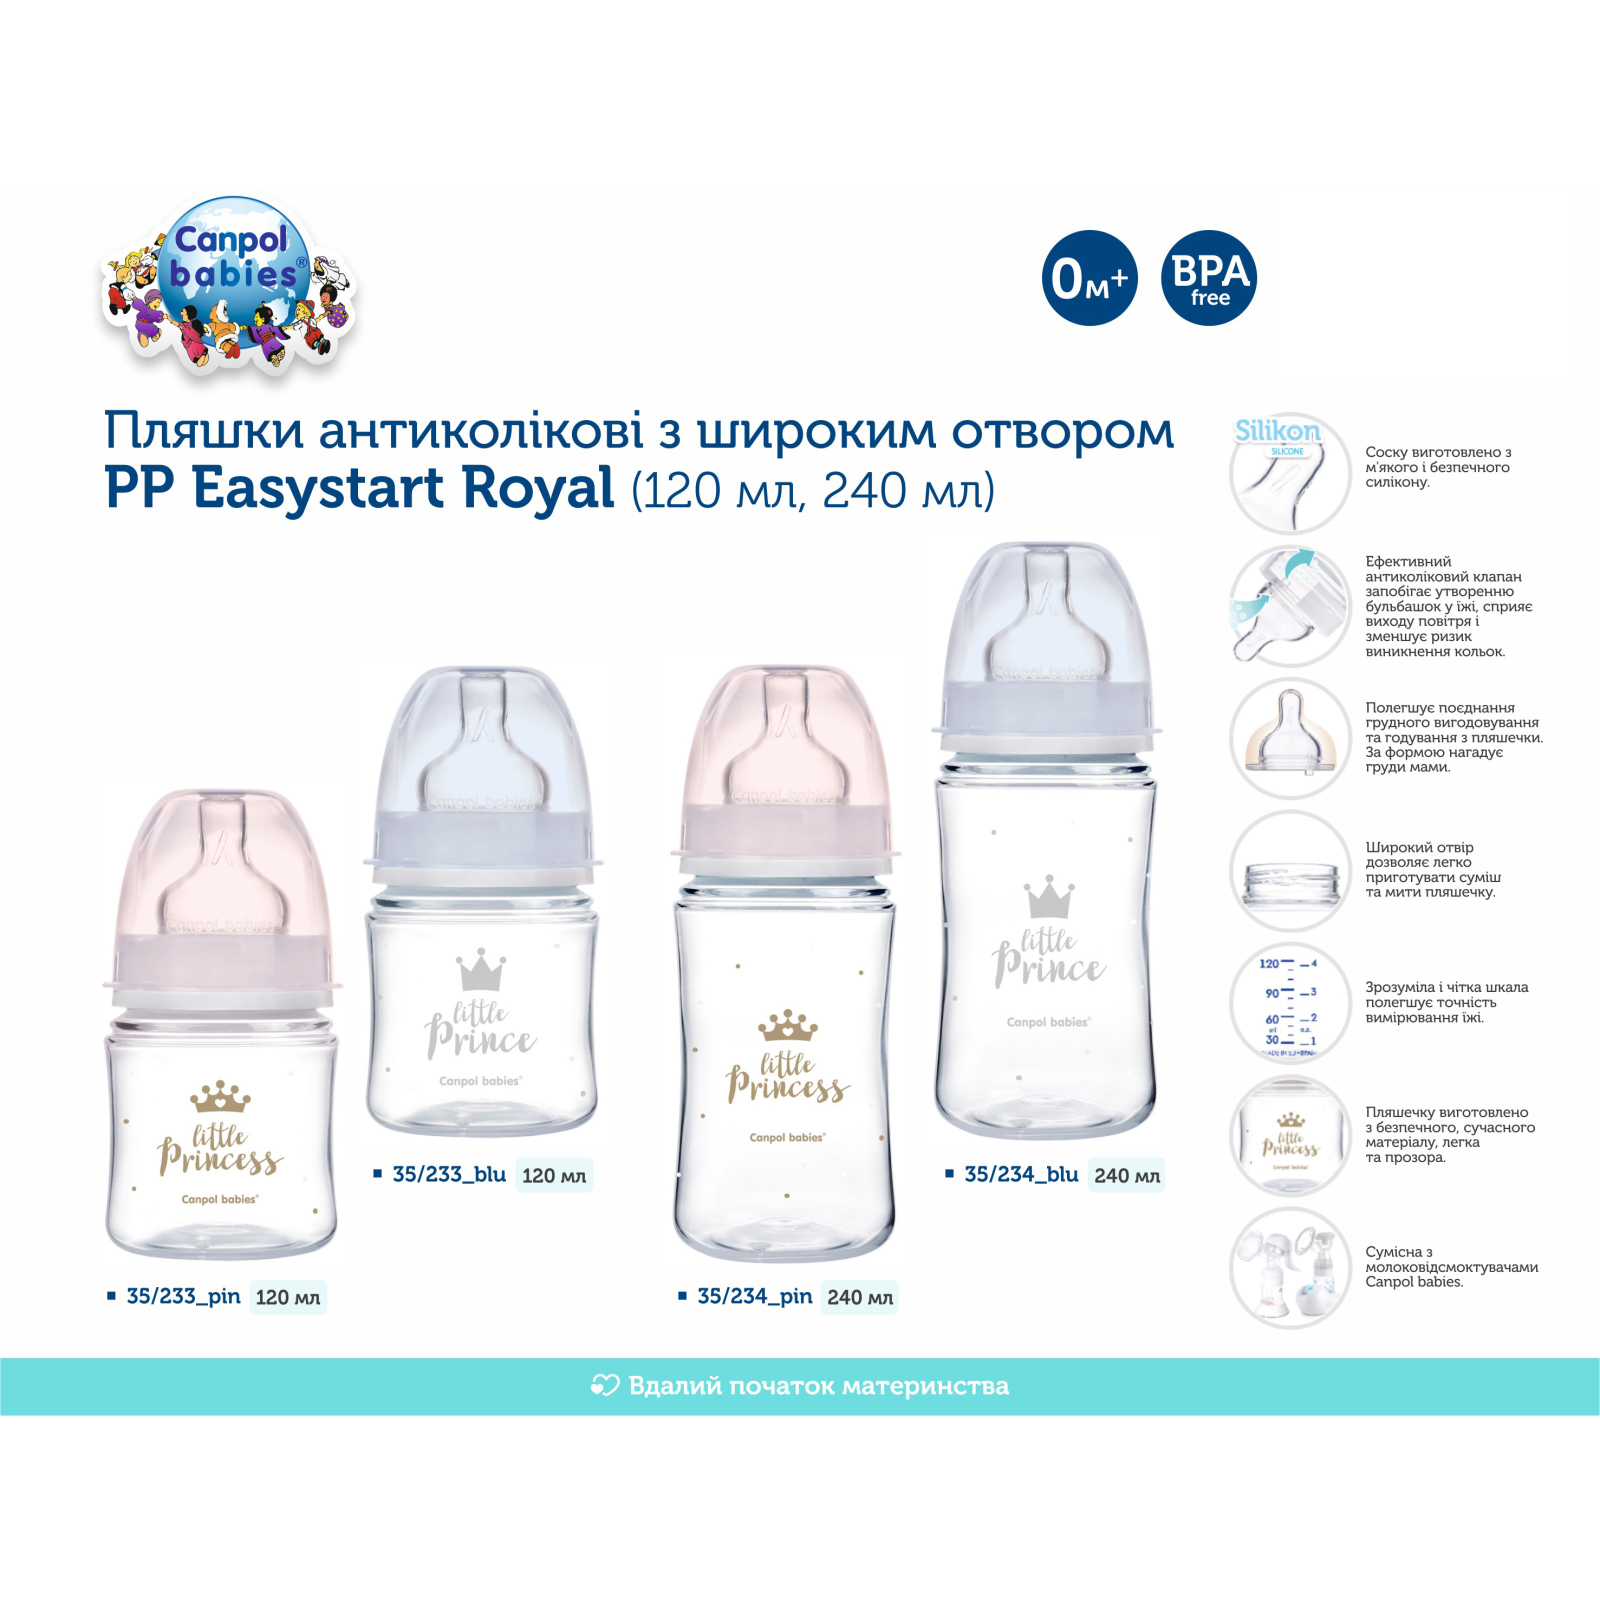 Бутылочка для кормления Canpol babies Royal Baby с широким отверстием 240 мл Розовая (35/234_pin) изображение 4